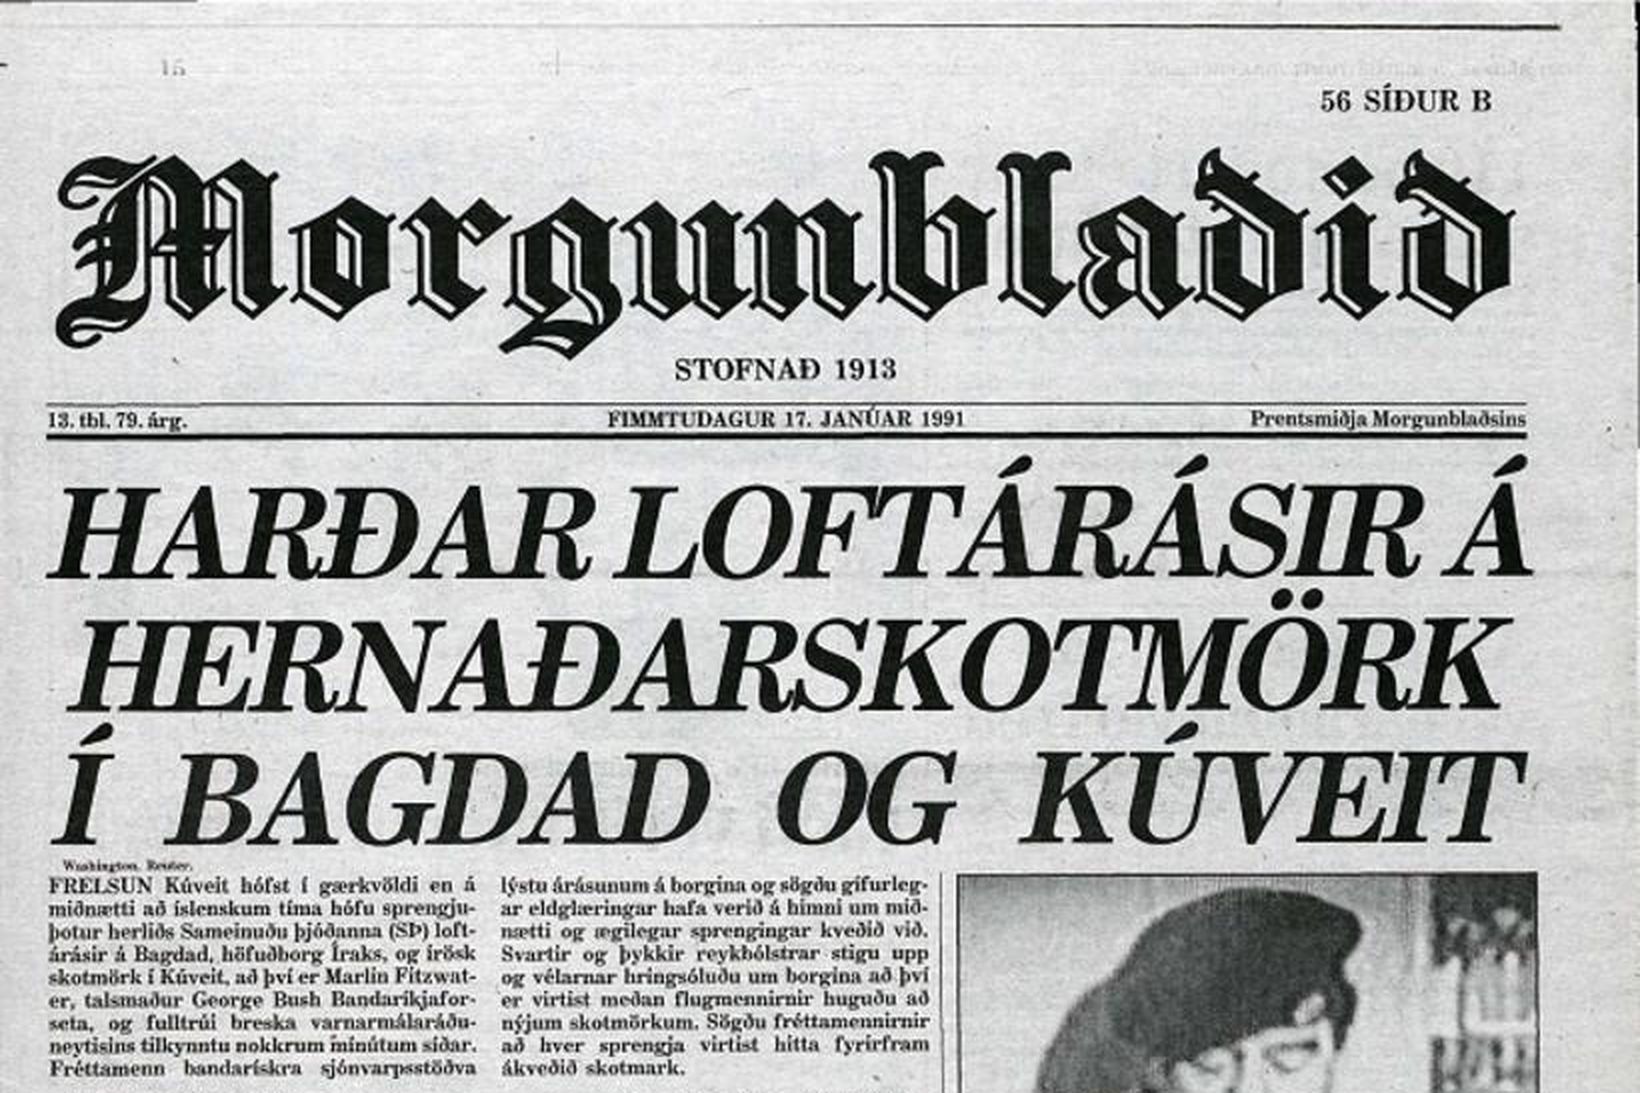 Forsíða Morgunblaðsins 17. janúar 1991.